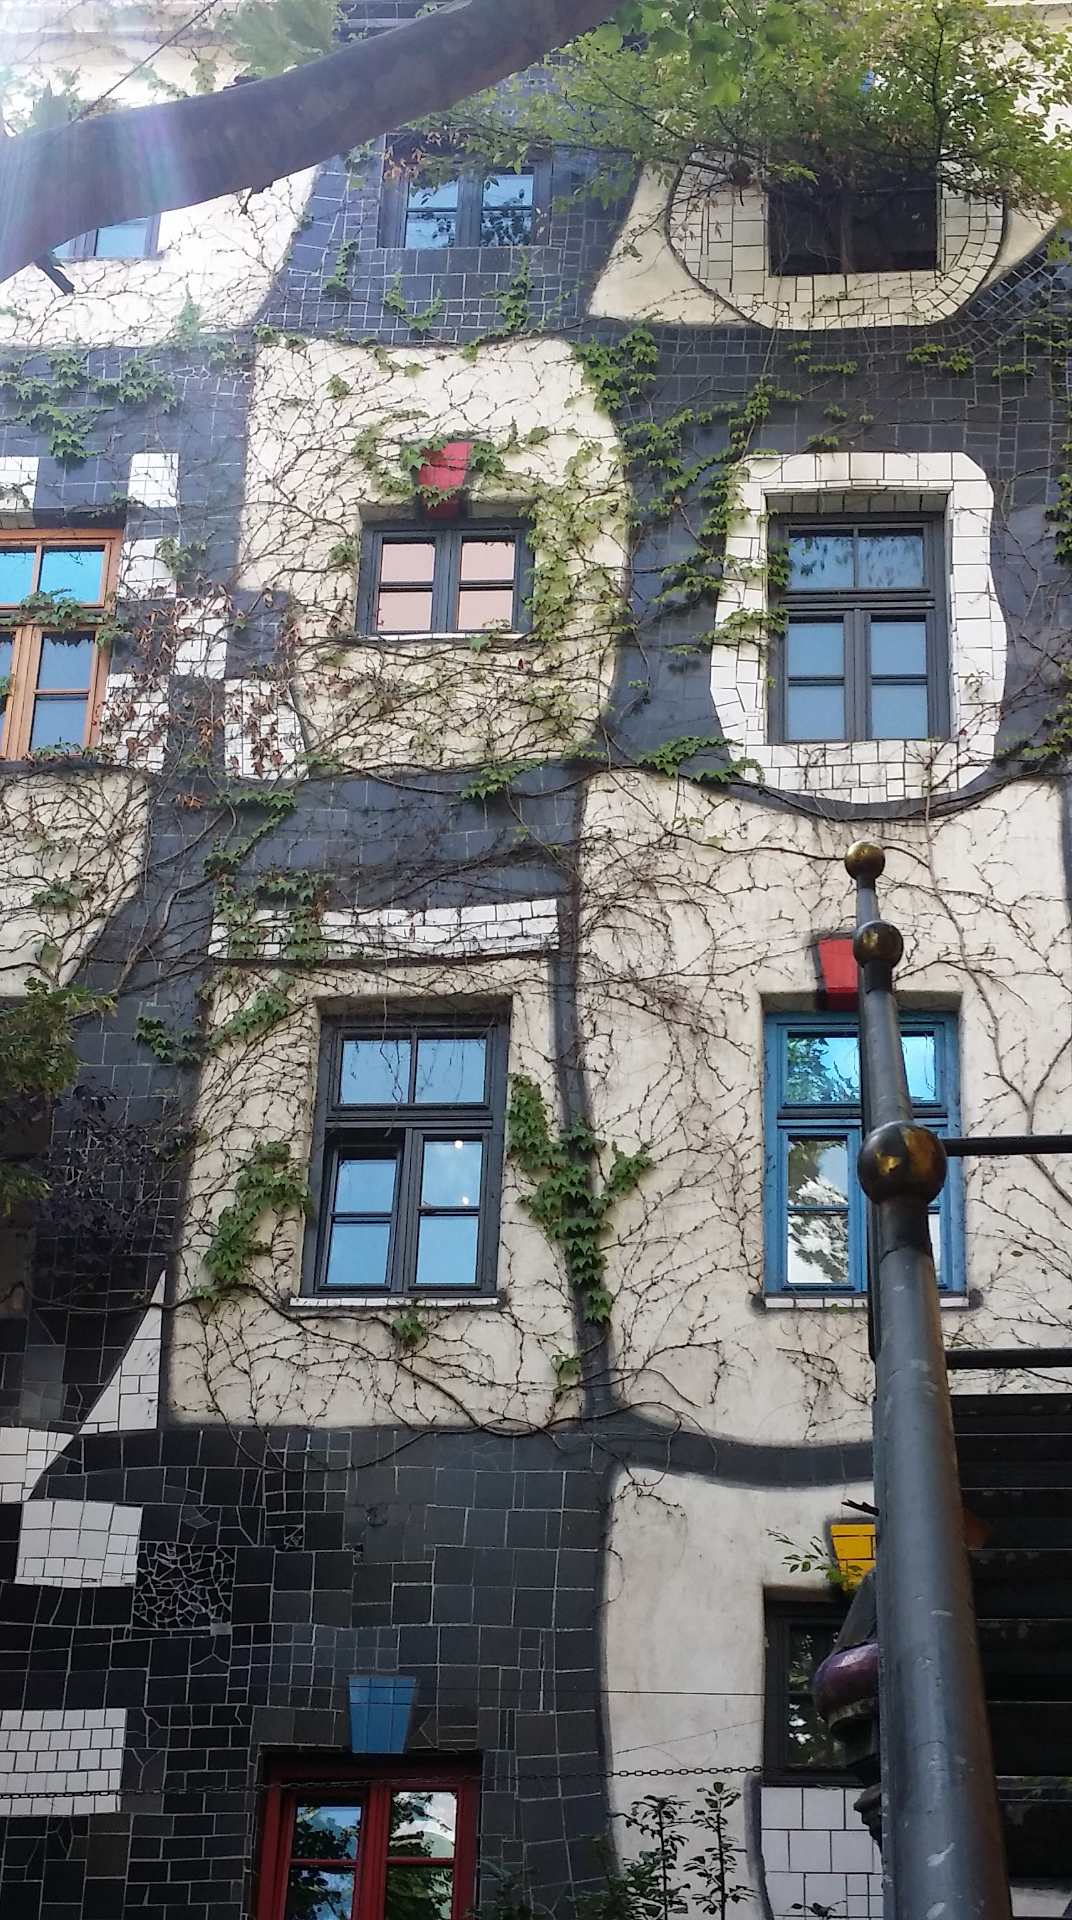 Das von Friedensreich Hunderwasser gestaltete Kunsthaus Wien